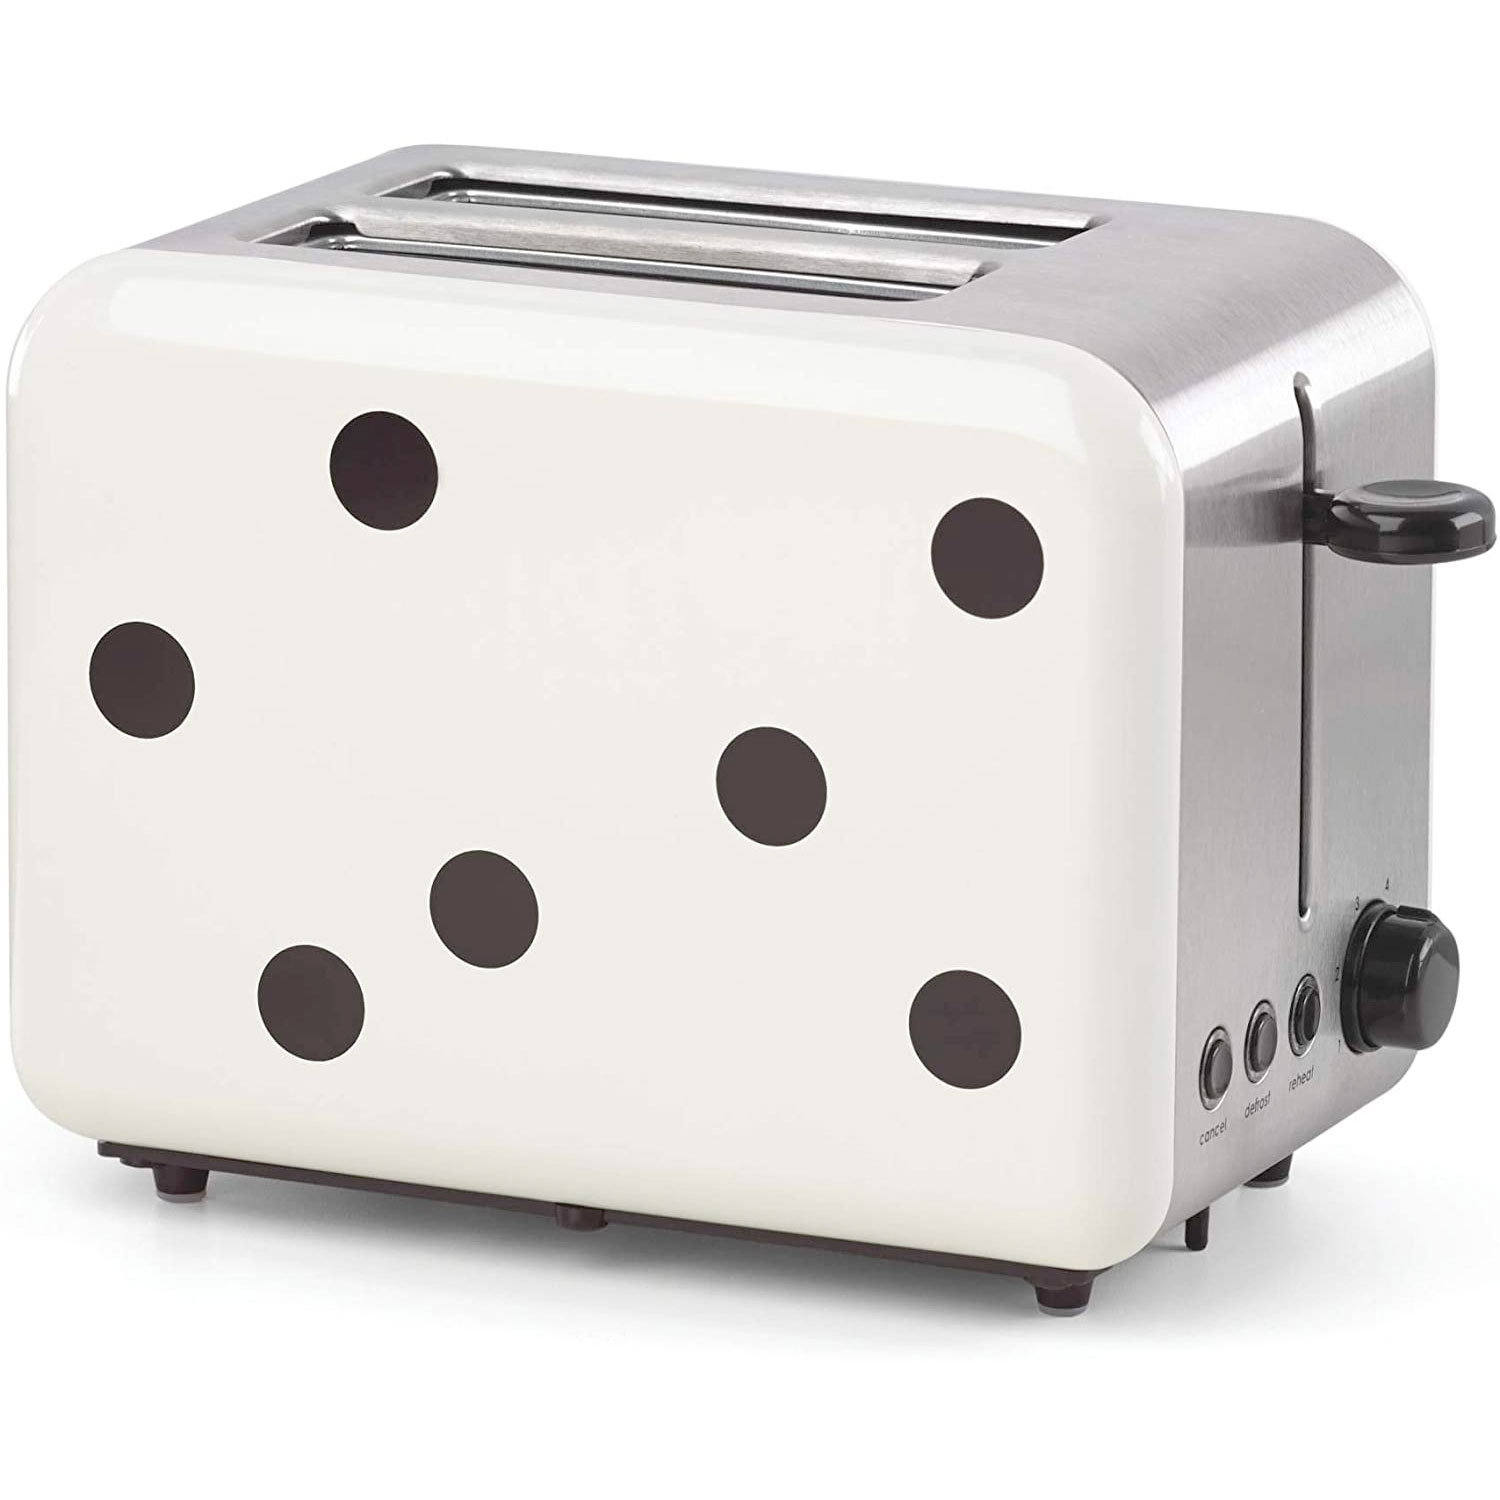 Amazon：Kate Spade New York Toaster只賣$38.96